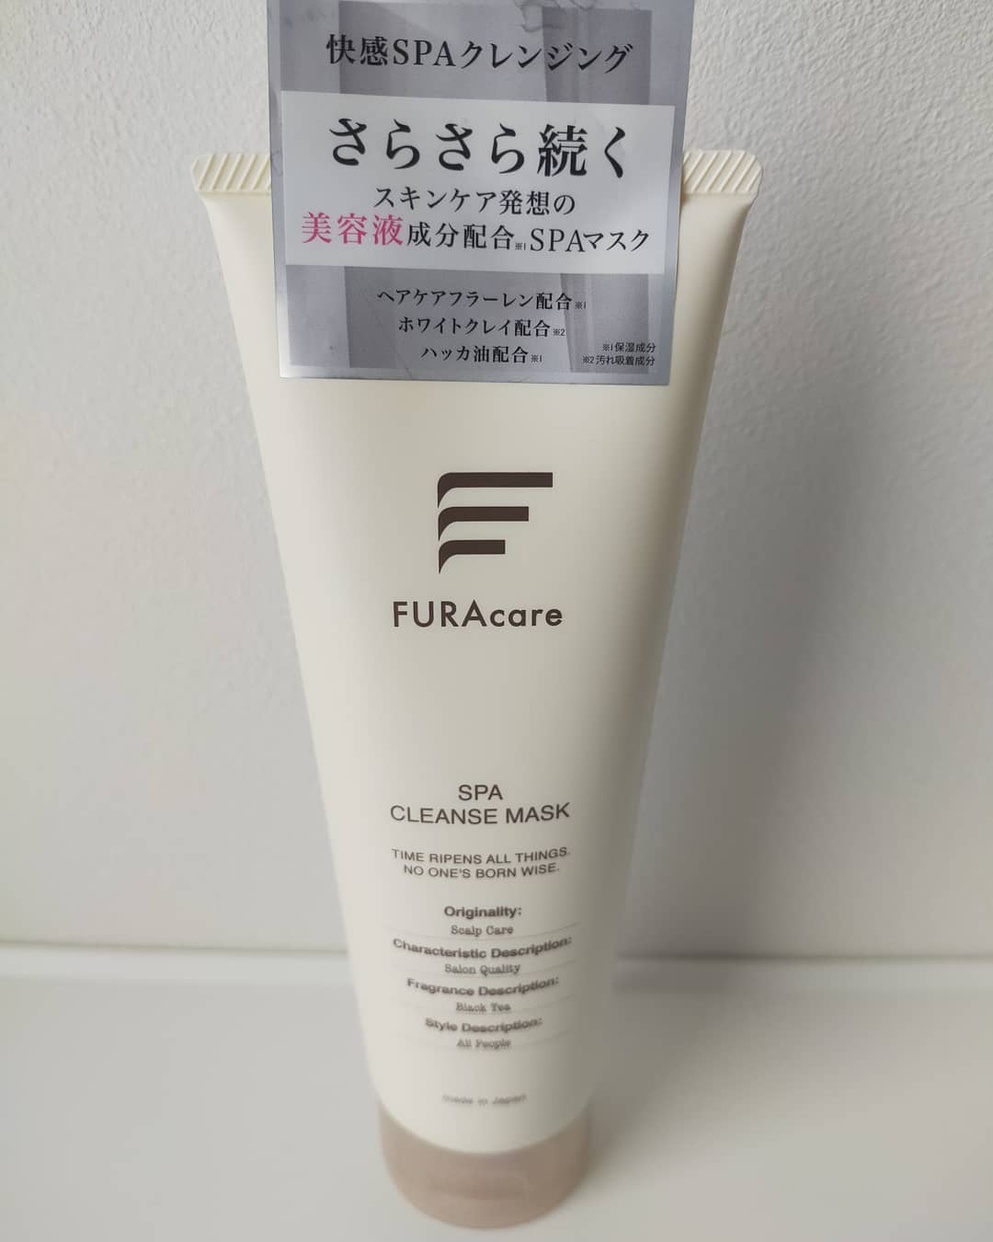 FURAcare(フラケア) フラケアクレンズSPAマスクを使ったyosakuotomisanさんのクチコミ画像1